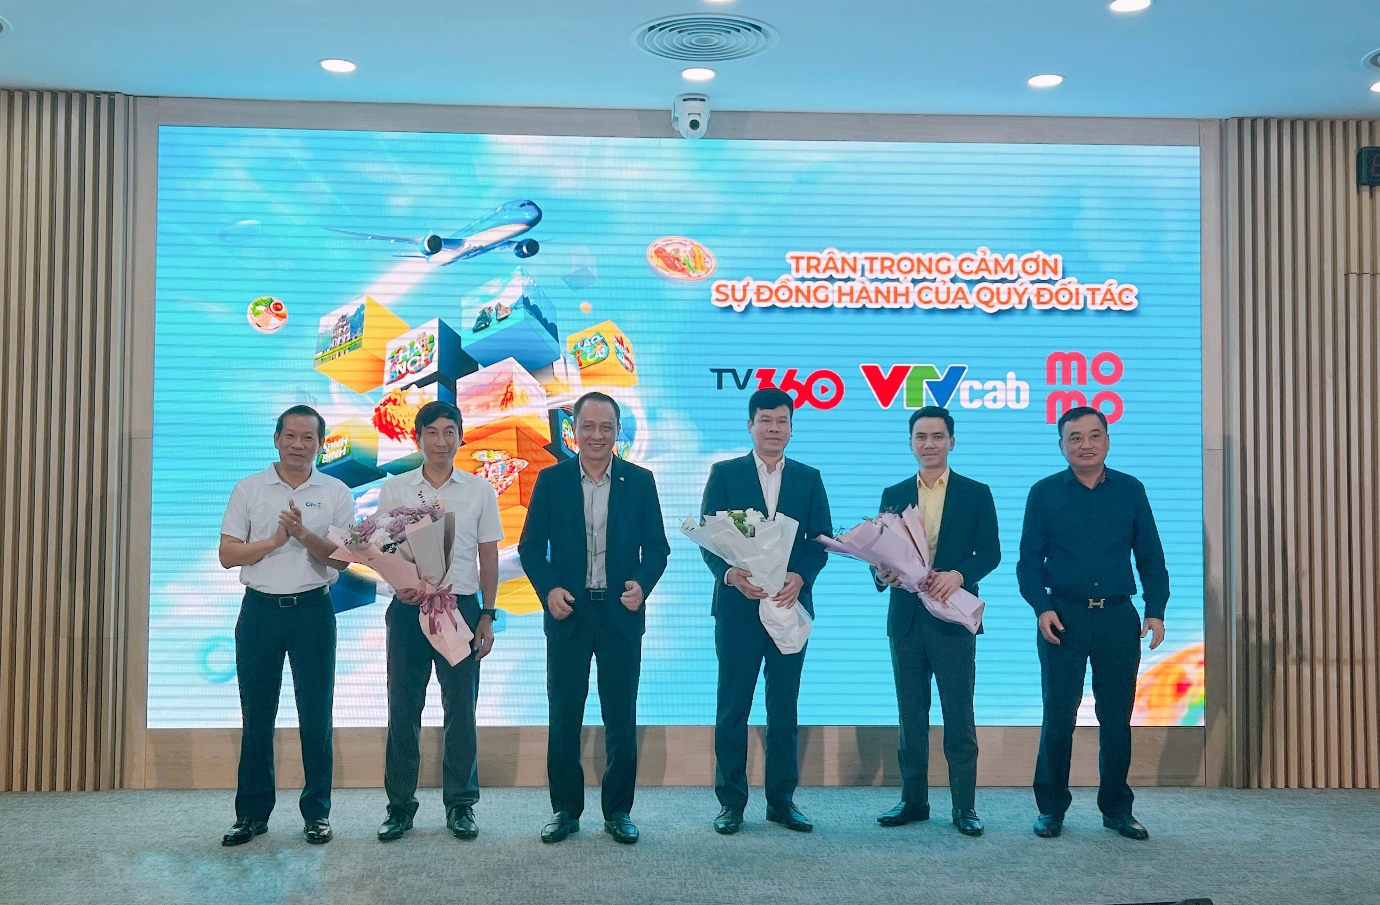 Vietnam Airlines bắt tay cùng TV360, VTVCab và Momo phát triển game tương tác One S - Ảnh 4.